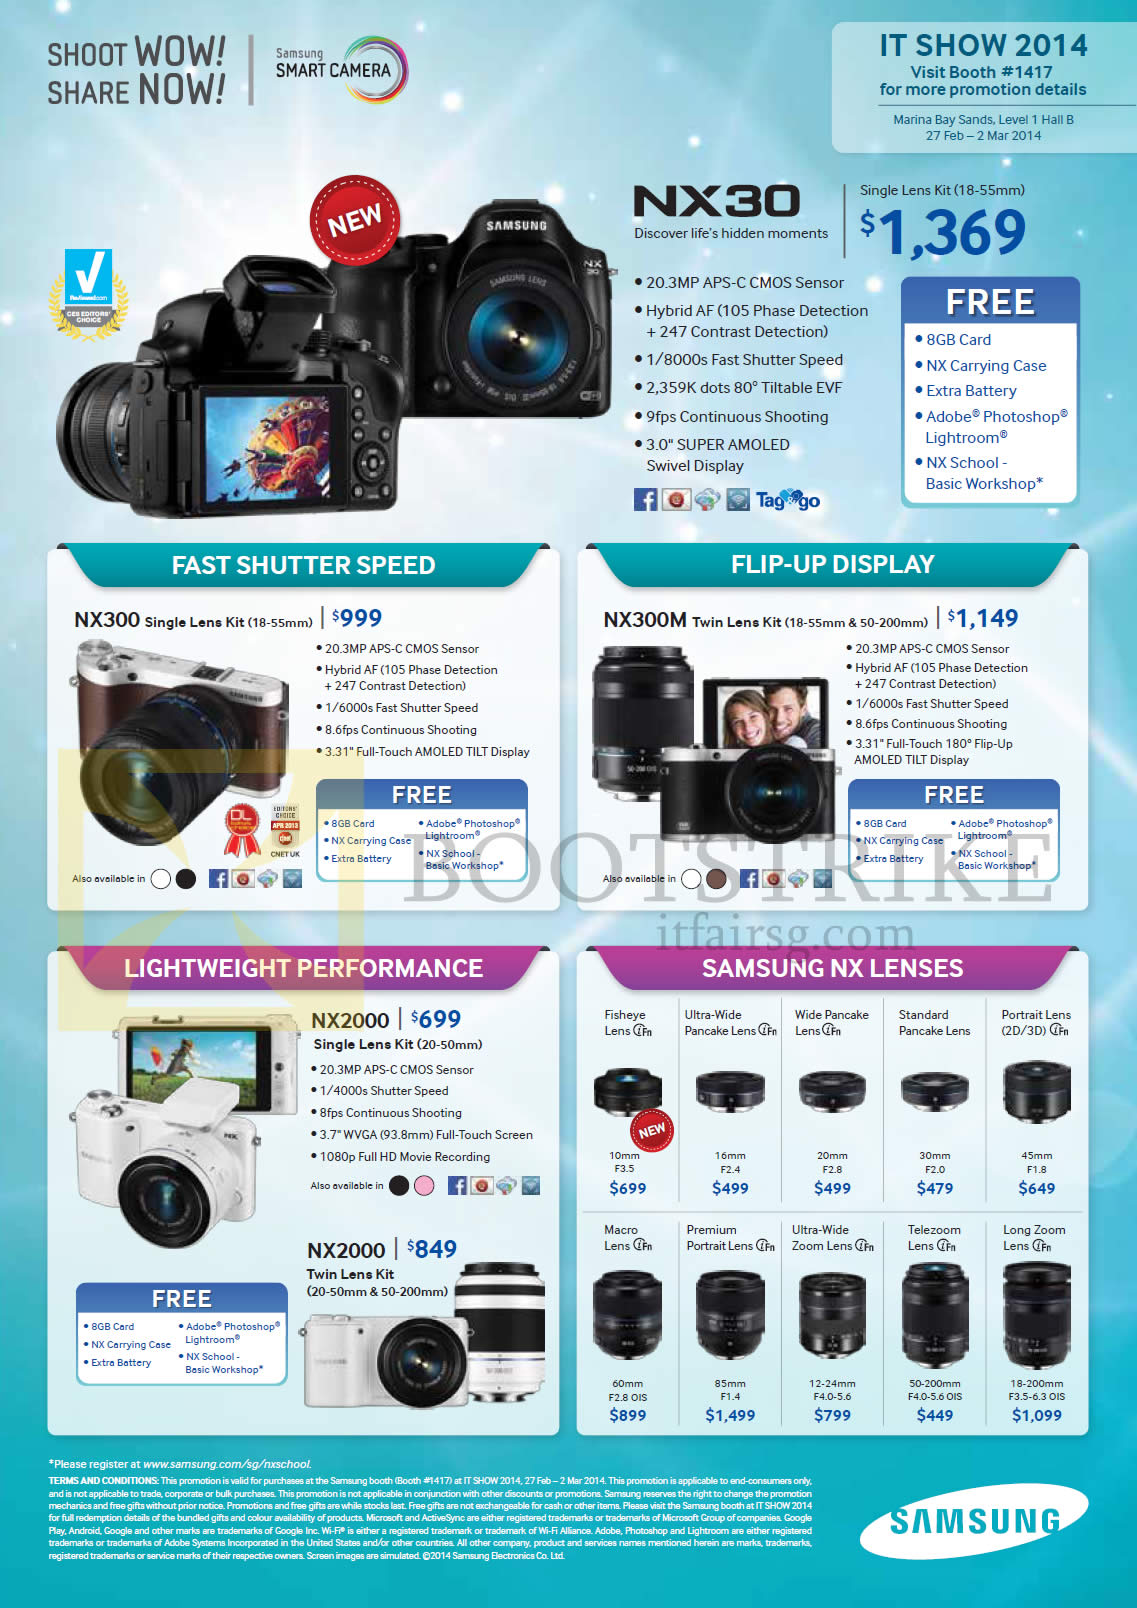 IT SHOW 2014 price list image brochure of Samsung Digital Cameras, NX Lenses, NX30, NX300, NX300M, NX2000